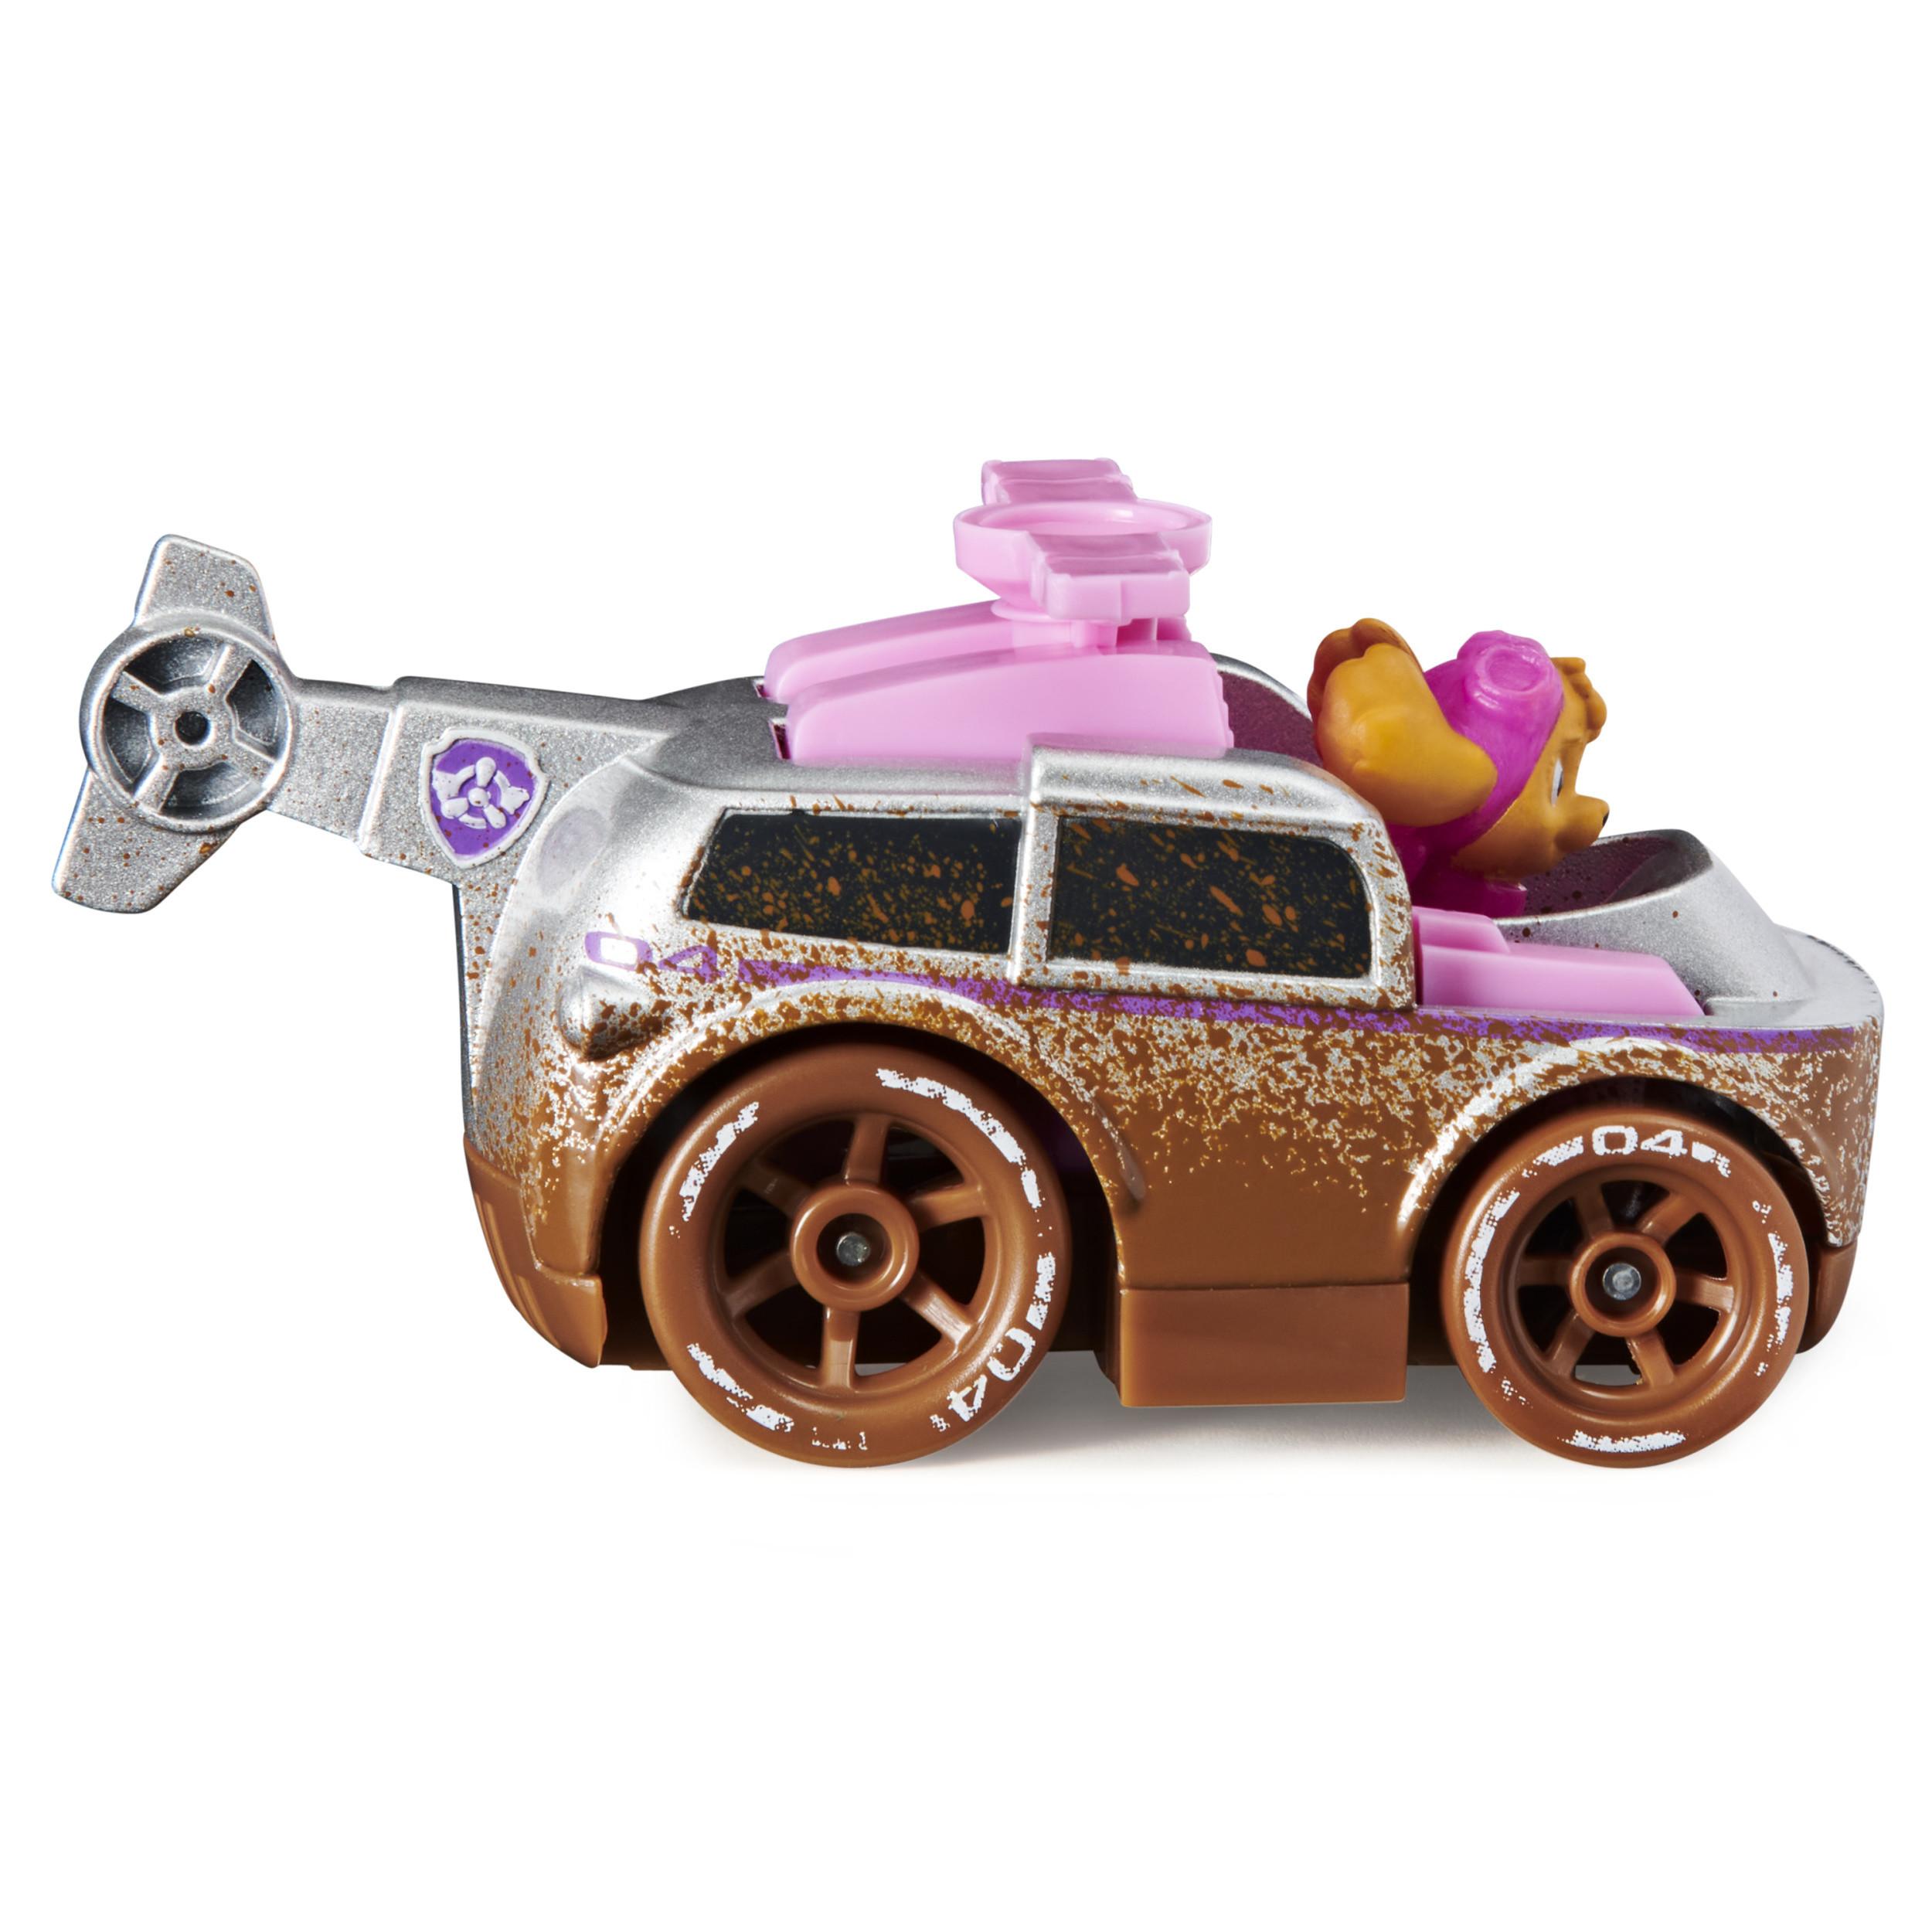 PAW PATROL  PAW Patrol True Metal Off-Road Mud, confezione da 3 con macchinine giocattolo di Skye, Chase e Marshall, scala 1:55, giocattoli per bambini dai 3 anni in su 